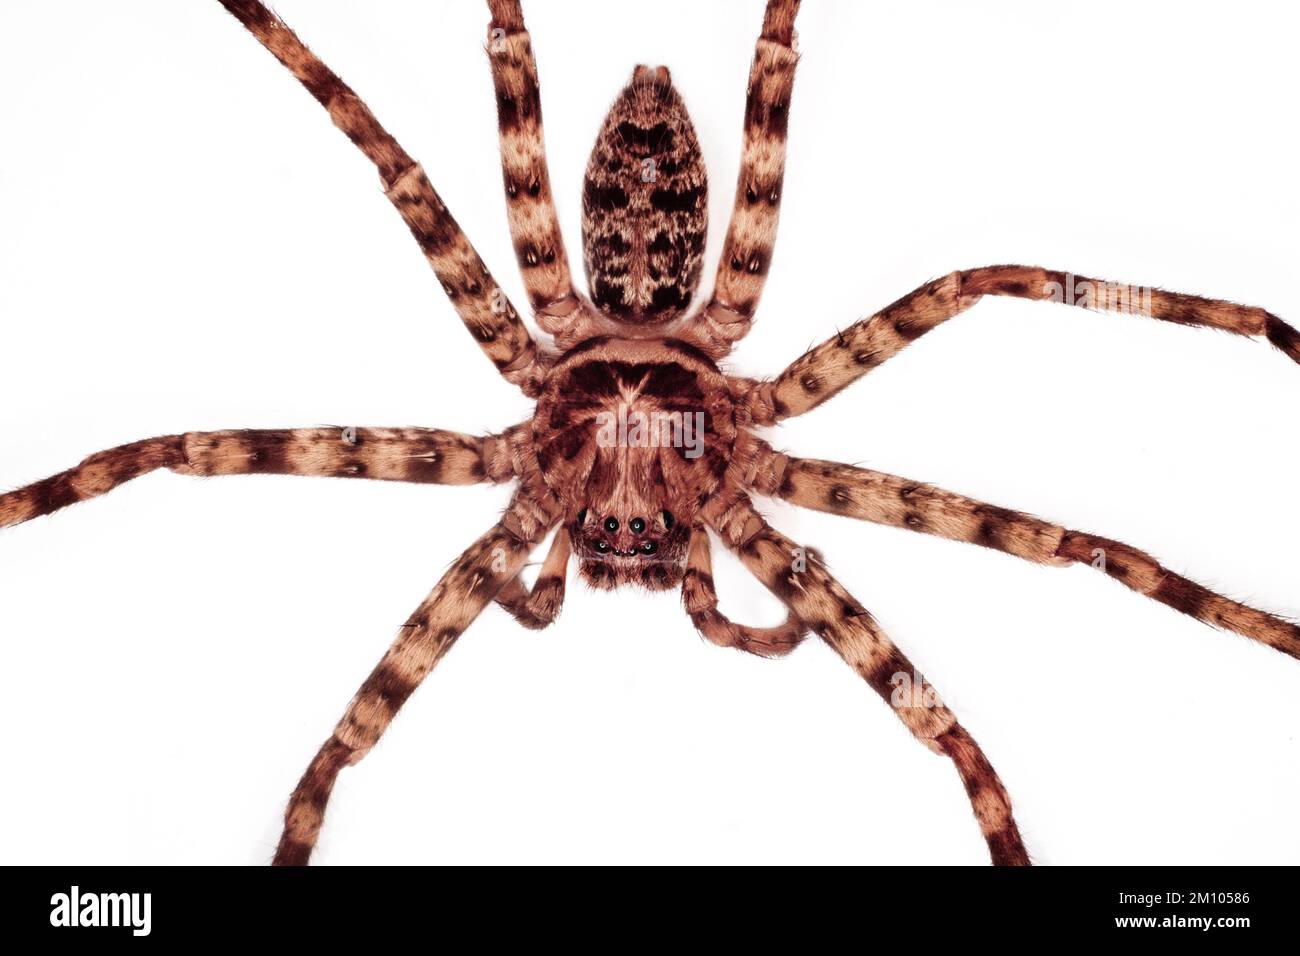 Grande araignée huntsman, vue dorsale en gros plan, Sarawak, Bornéo, Malaisie orientale. Fond blanc, découpe Banque D'Images